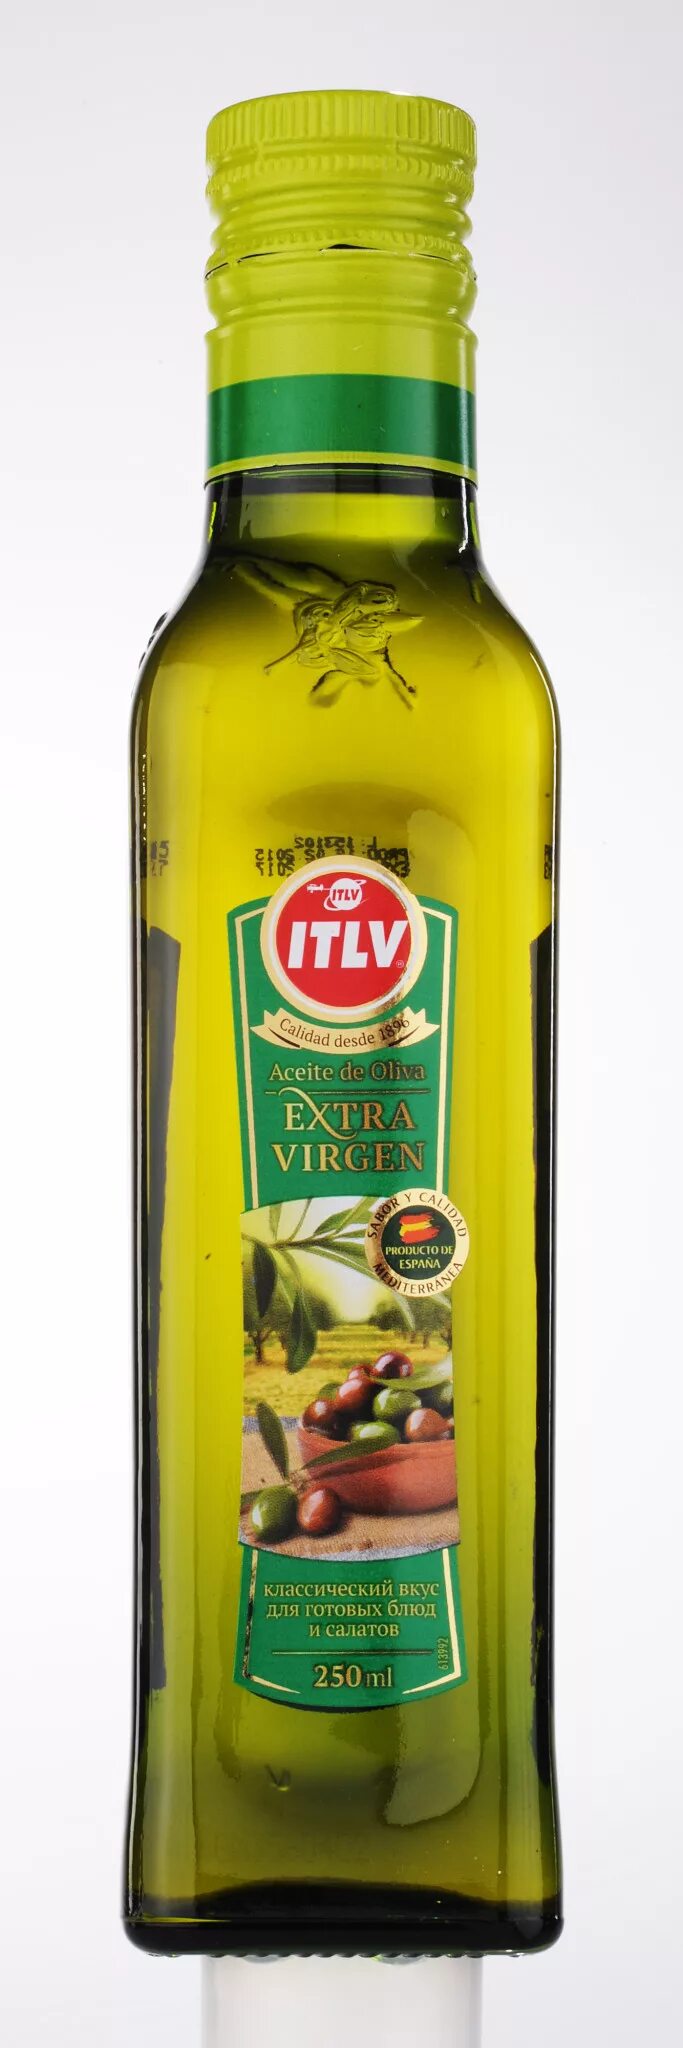 Купить нерафинированное оливковое масло холодного отжима. Оливковое масло холодного отжима Манини. Масло оливковое нерафинированное первого холодного отжима. Оливковое масло Экстра Вирджин холодного. Масло оливковое Extra Virgin ITLV.